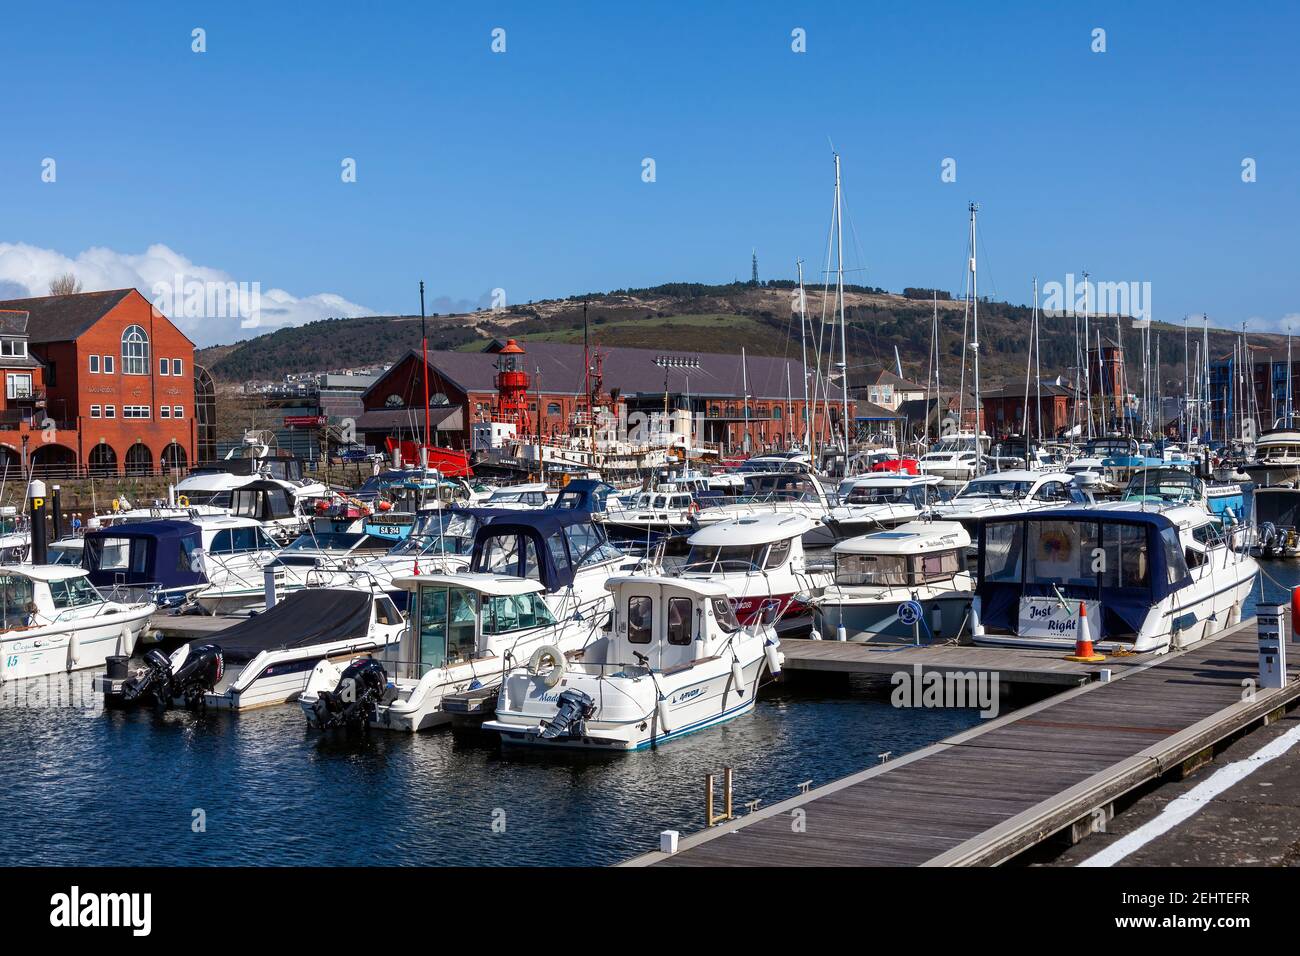 Swansea, Galles, 31 marzo 2017 : Swansea Marina è una popolare località balneare per le barche e gli yacht sulla costa gallese, stoc Foto Stock